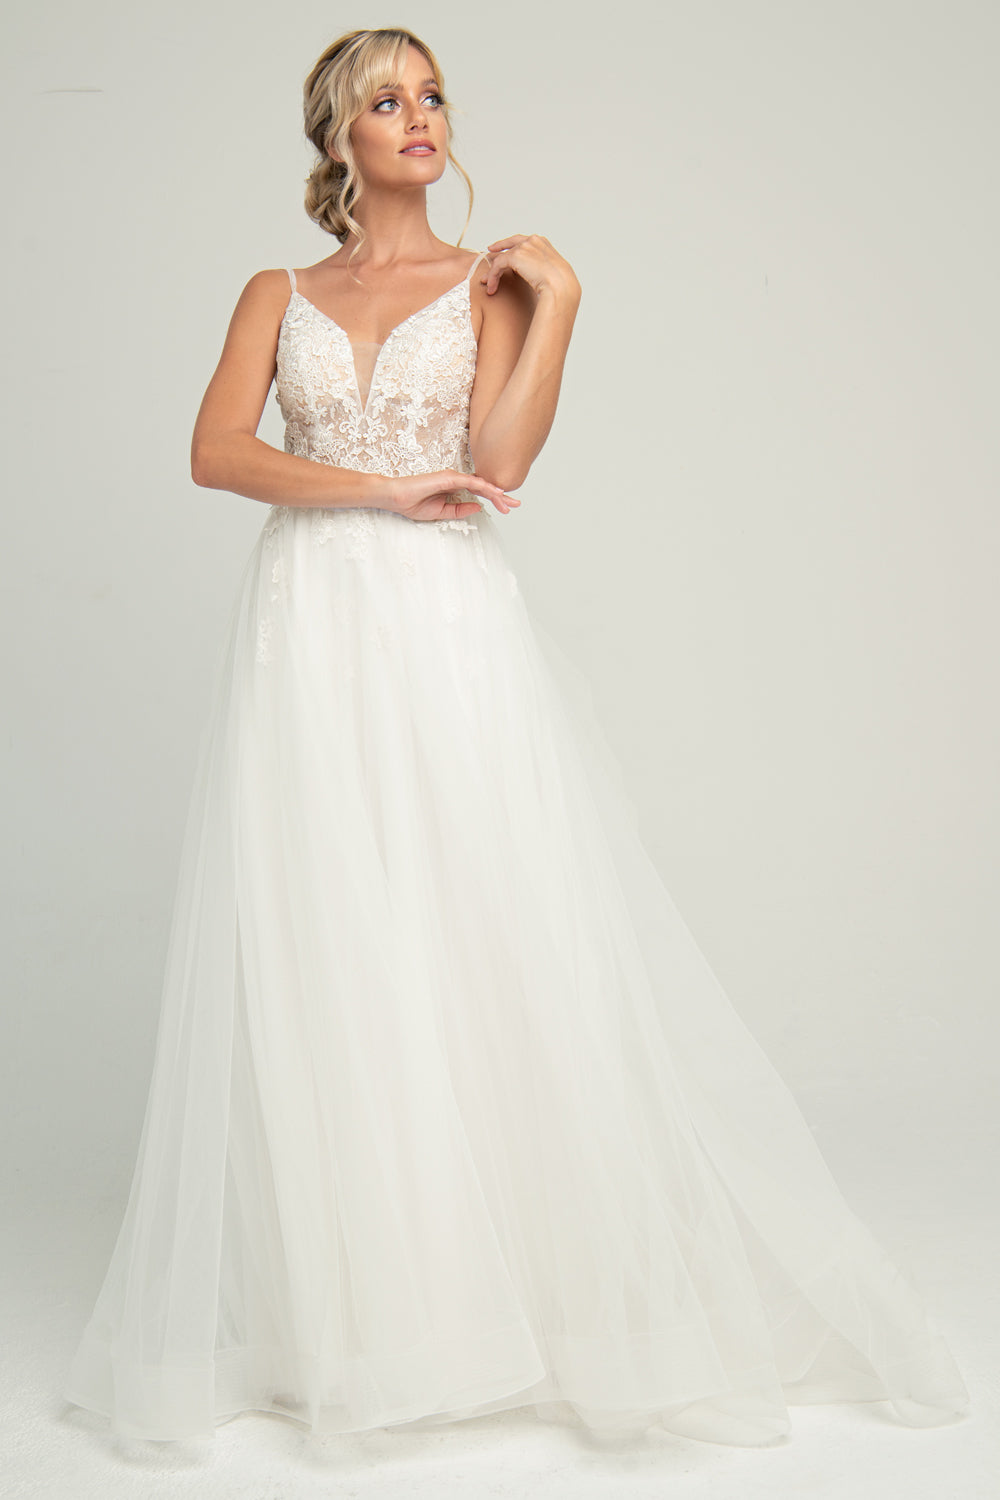 Lace Embroidered Bodice Tulle Skirt Long Wedding Dress ACSU063-Wedding Dress-smcfashion.com